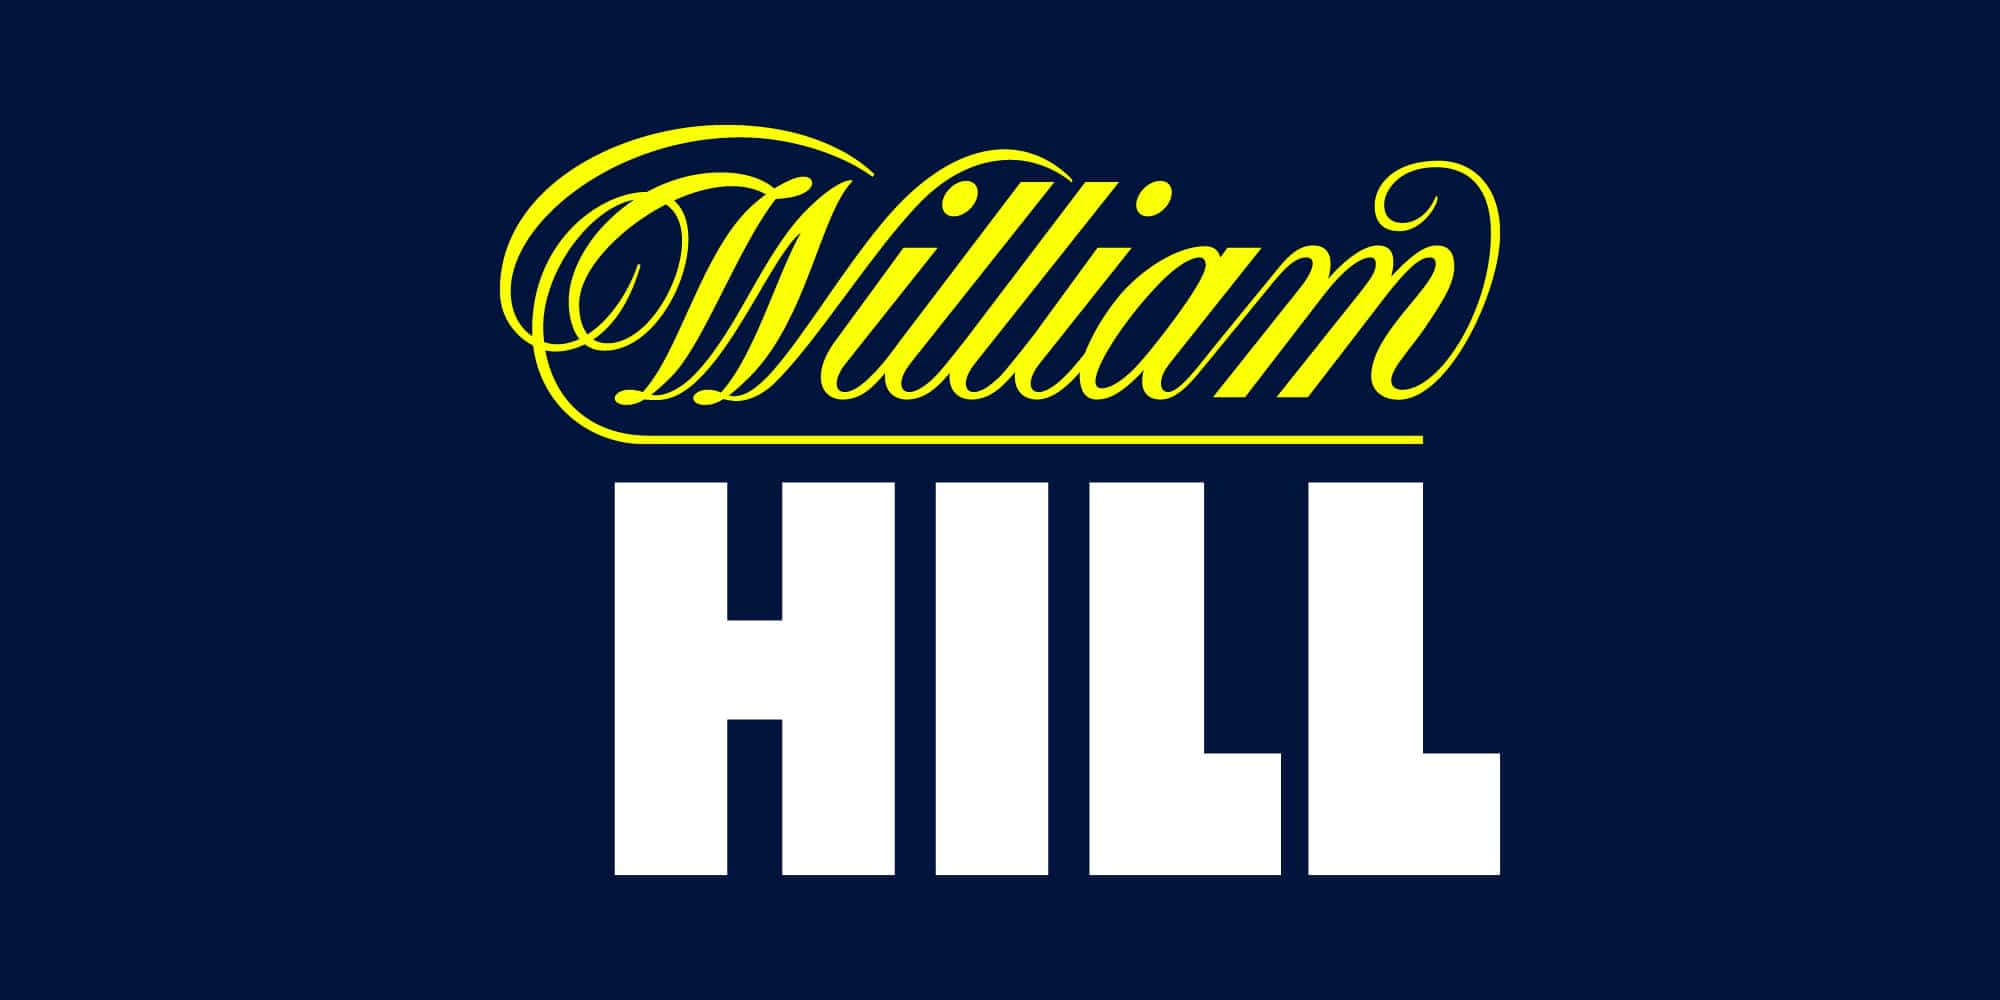 William Hill Poker Promo Code 2017